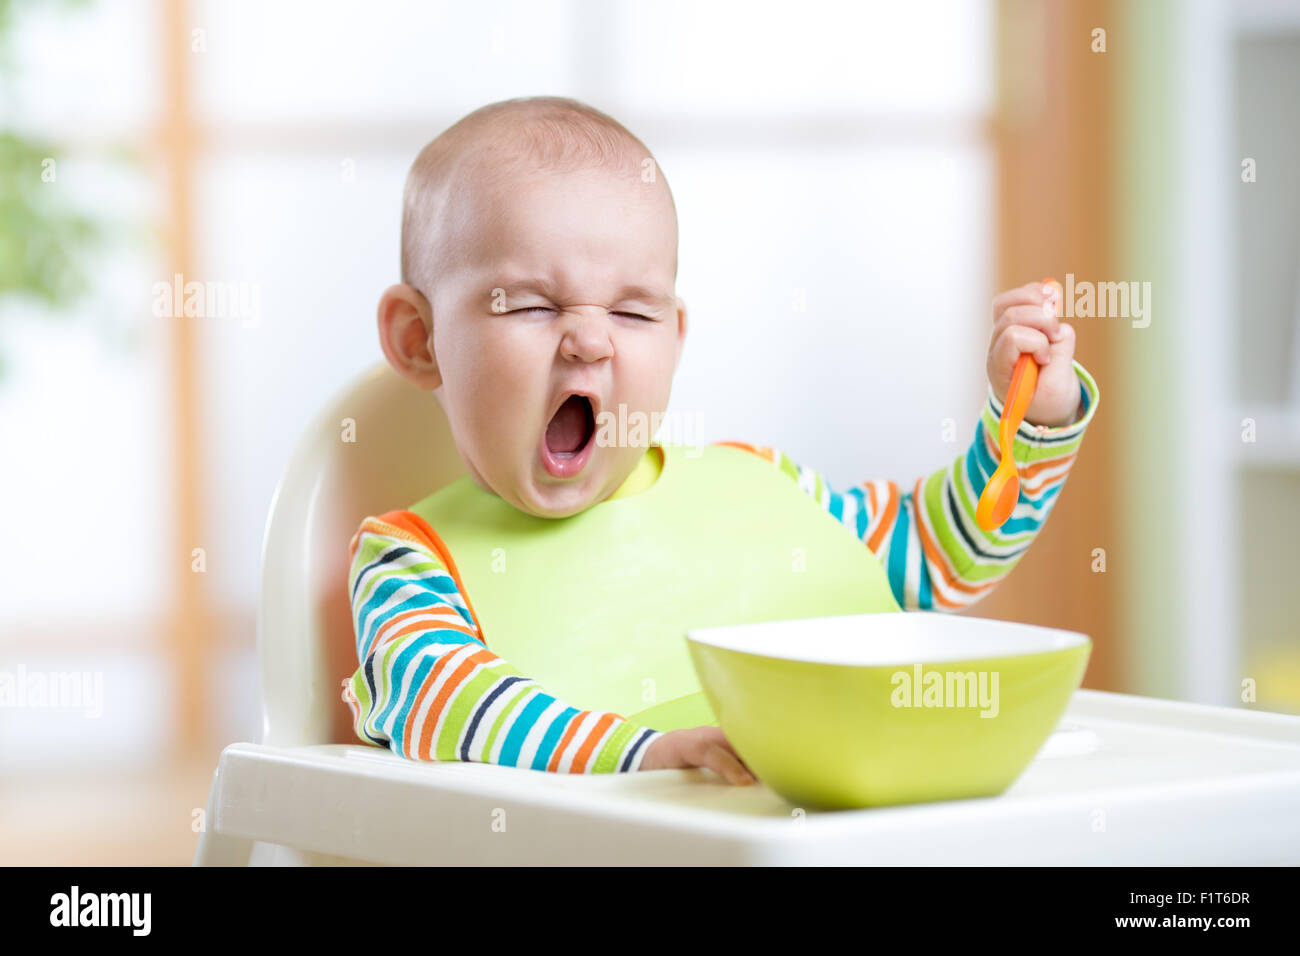 funny kid eating healthy food indoor Stock Photo